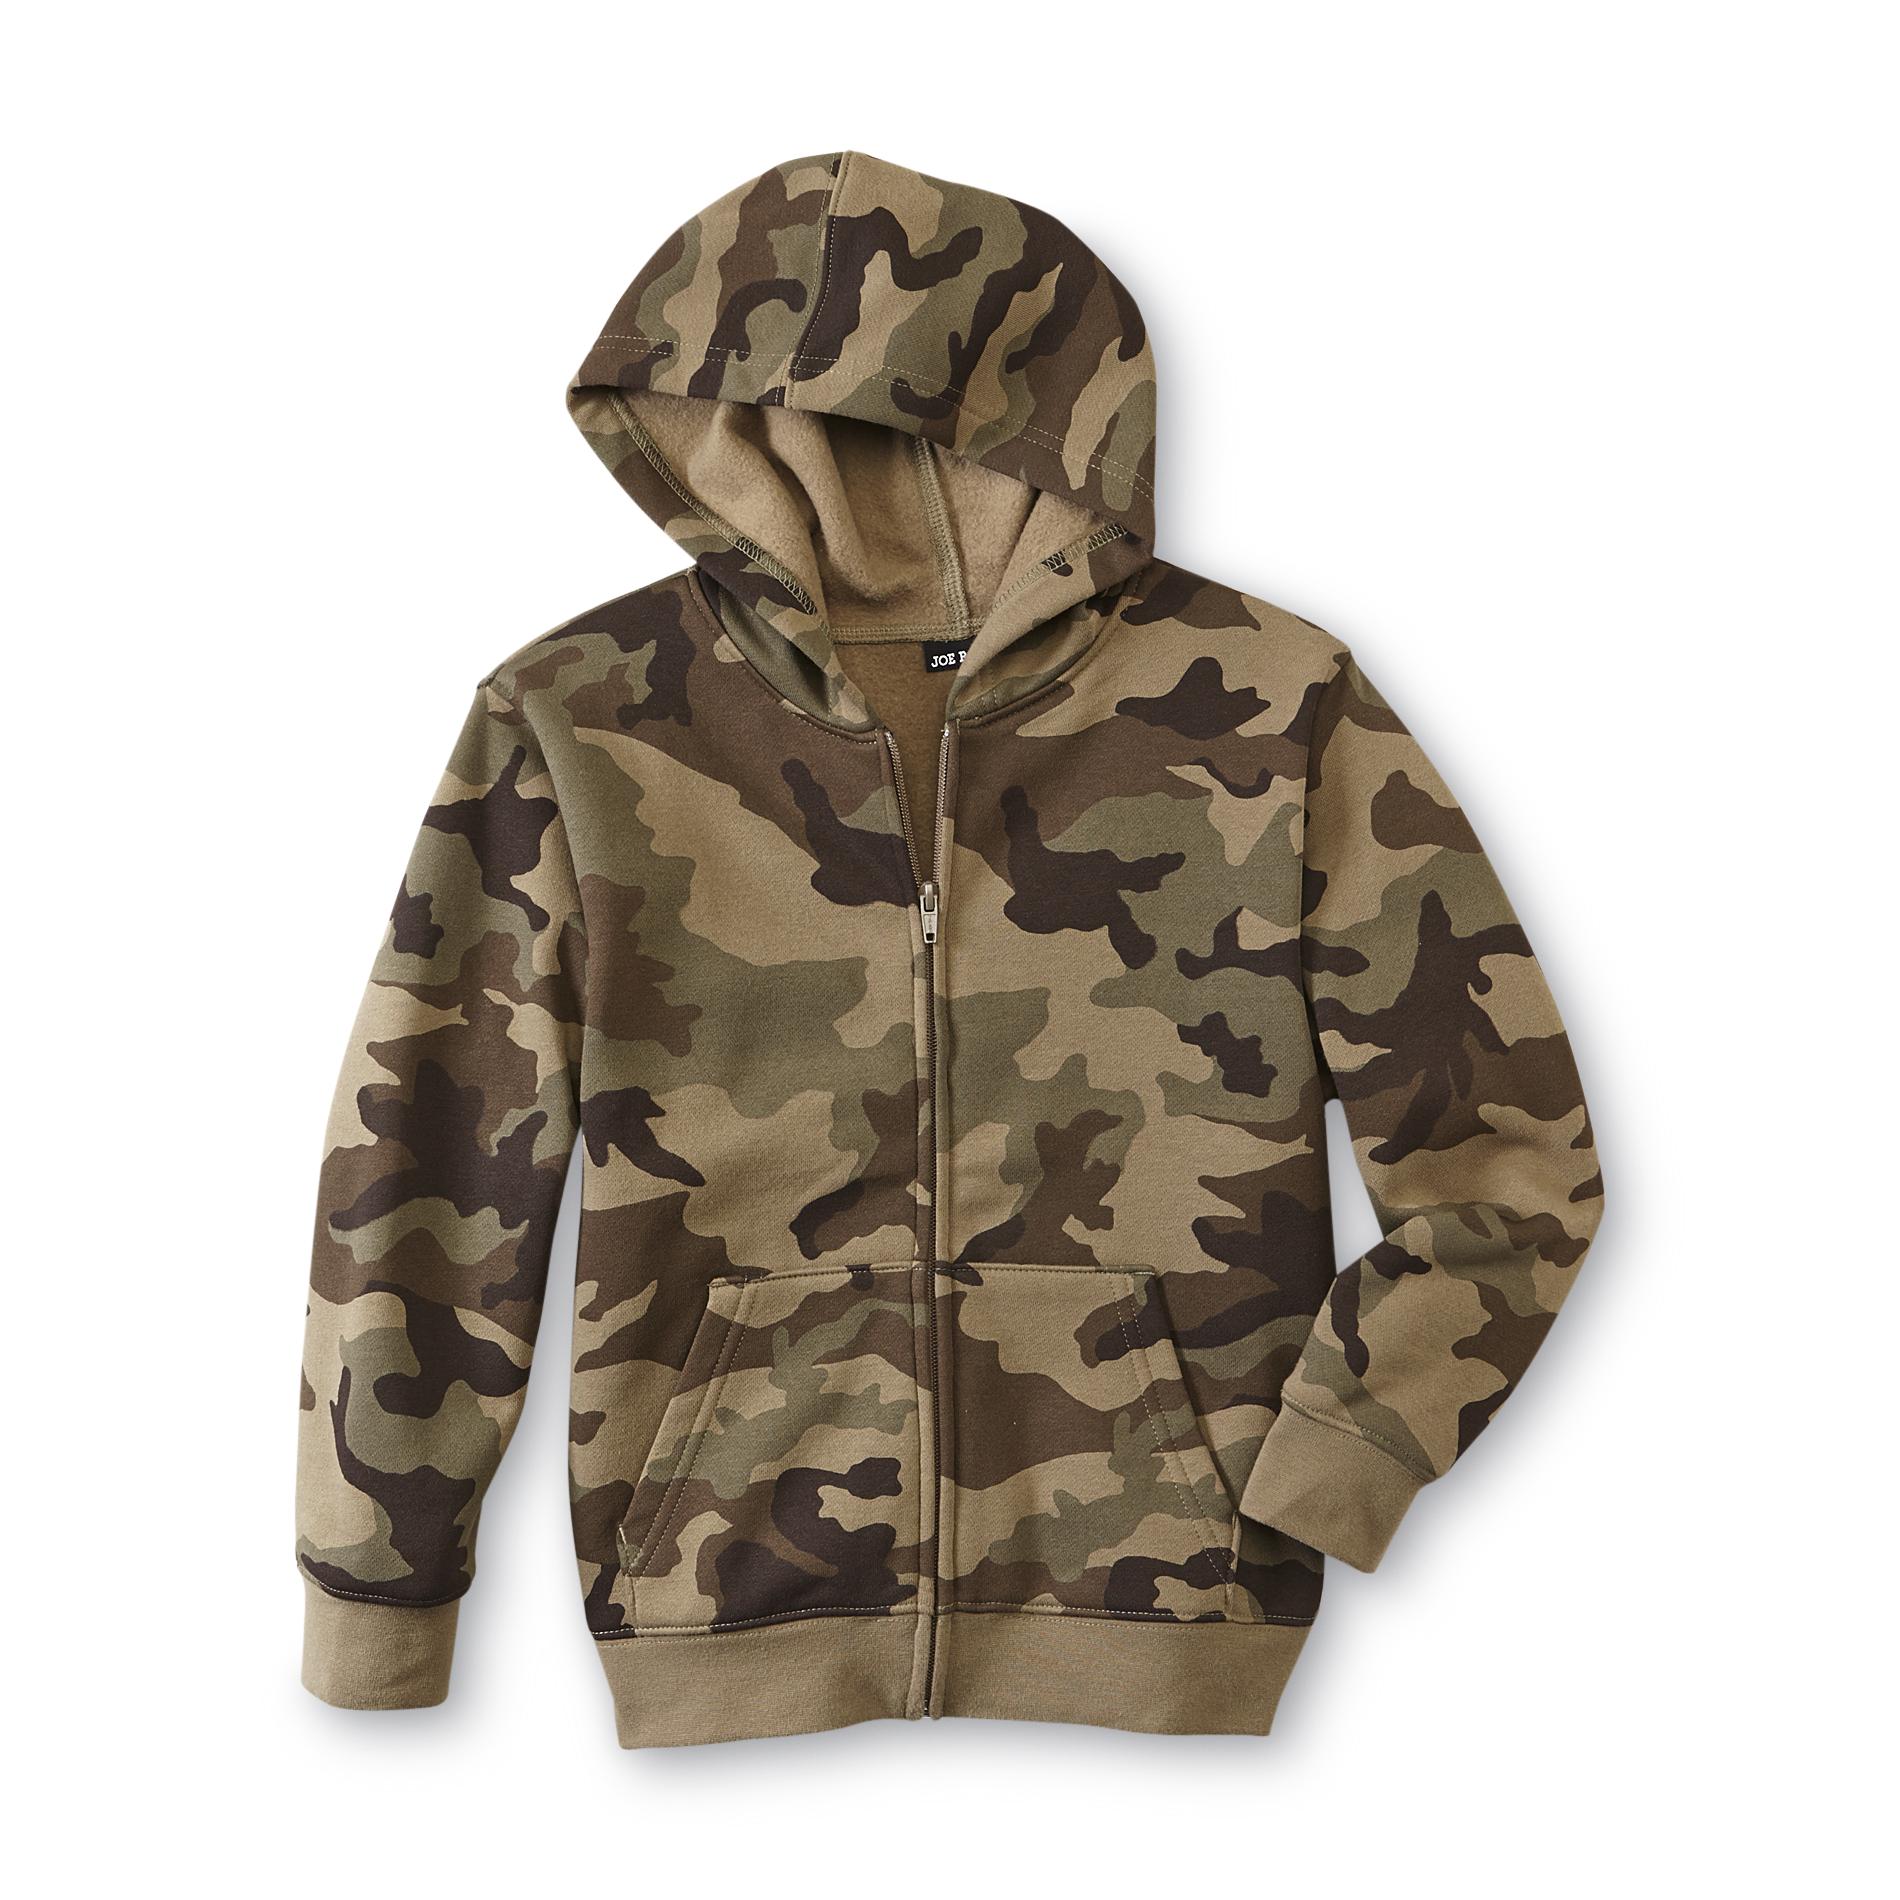 Joe Boxer Boy's Fleece-Lined Hoodie Jacket - Camouflage